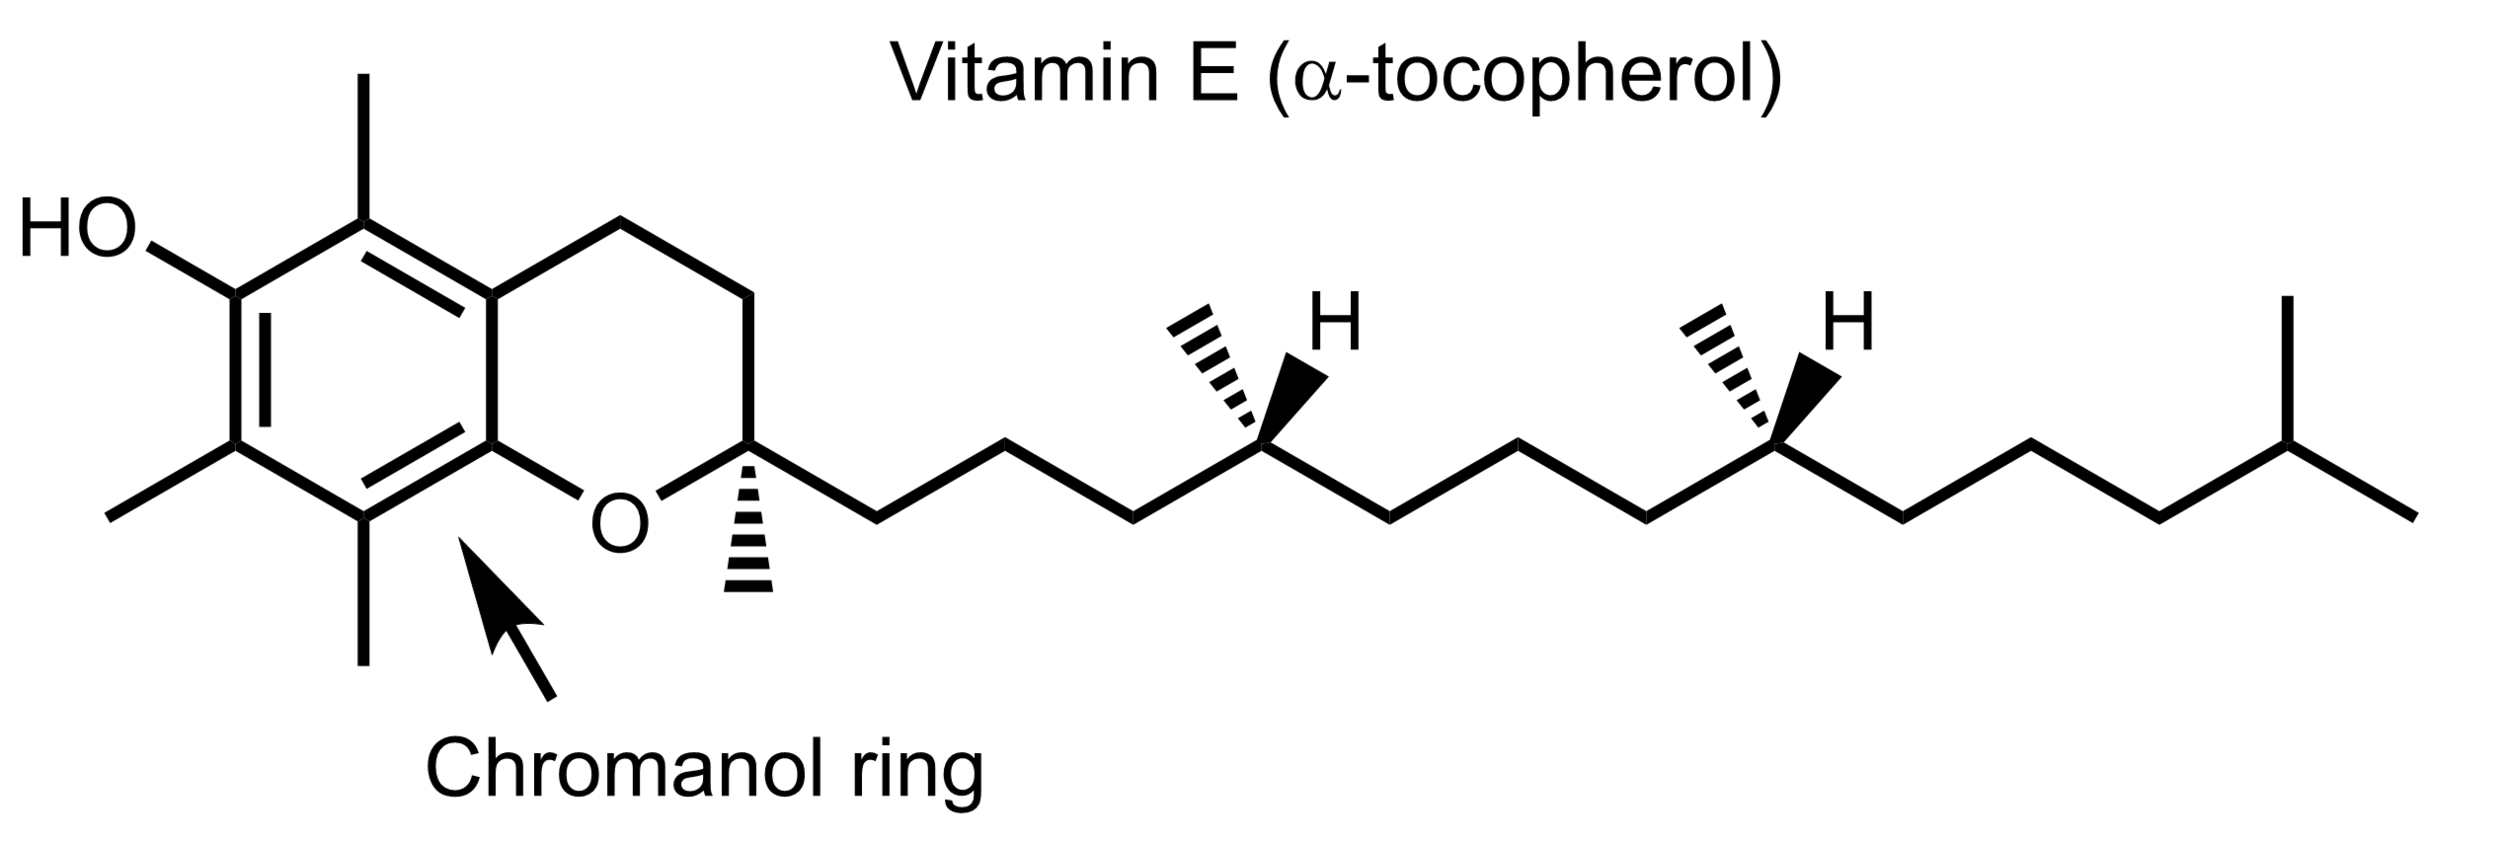 presentation of vitamin e